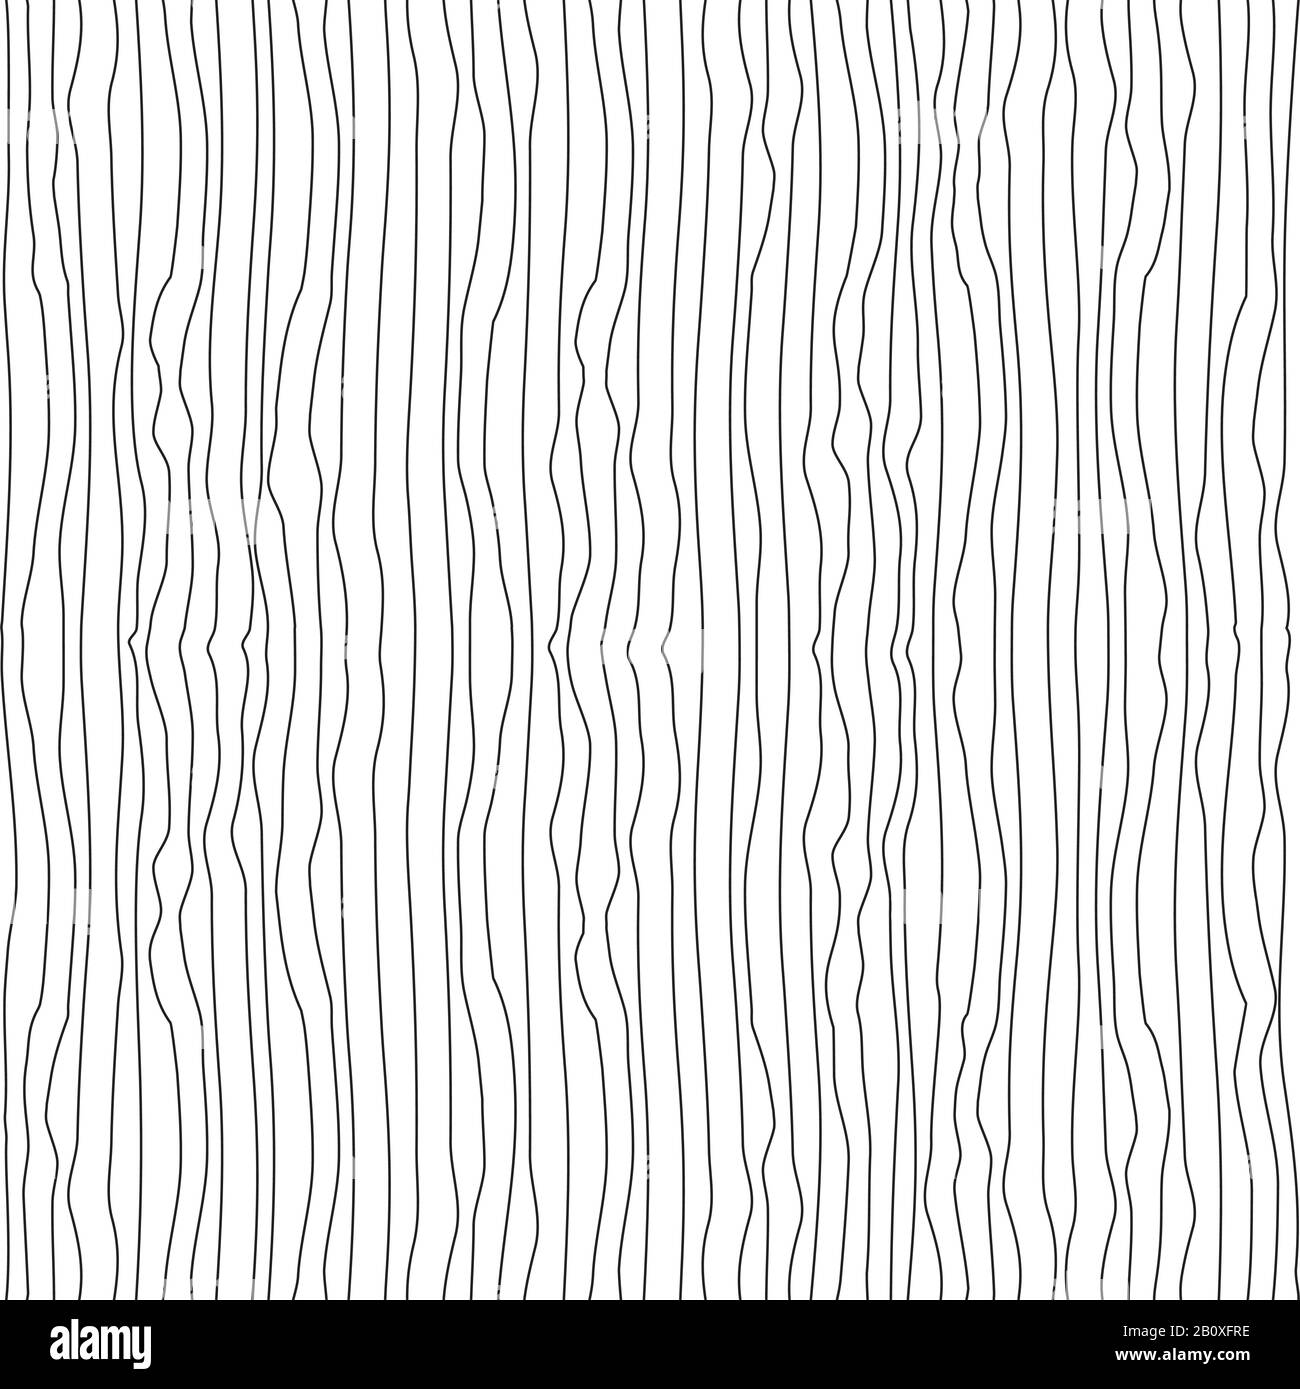 Vertikale gewellte dünne unebene Linien nahtloses Muster. Abstrakte nahtlose Textur in Schwarz und Weiß. Vektorgrafik im EPS8-Format Stock Vektor